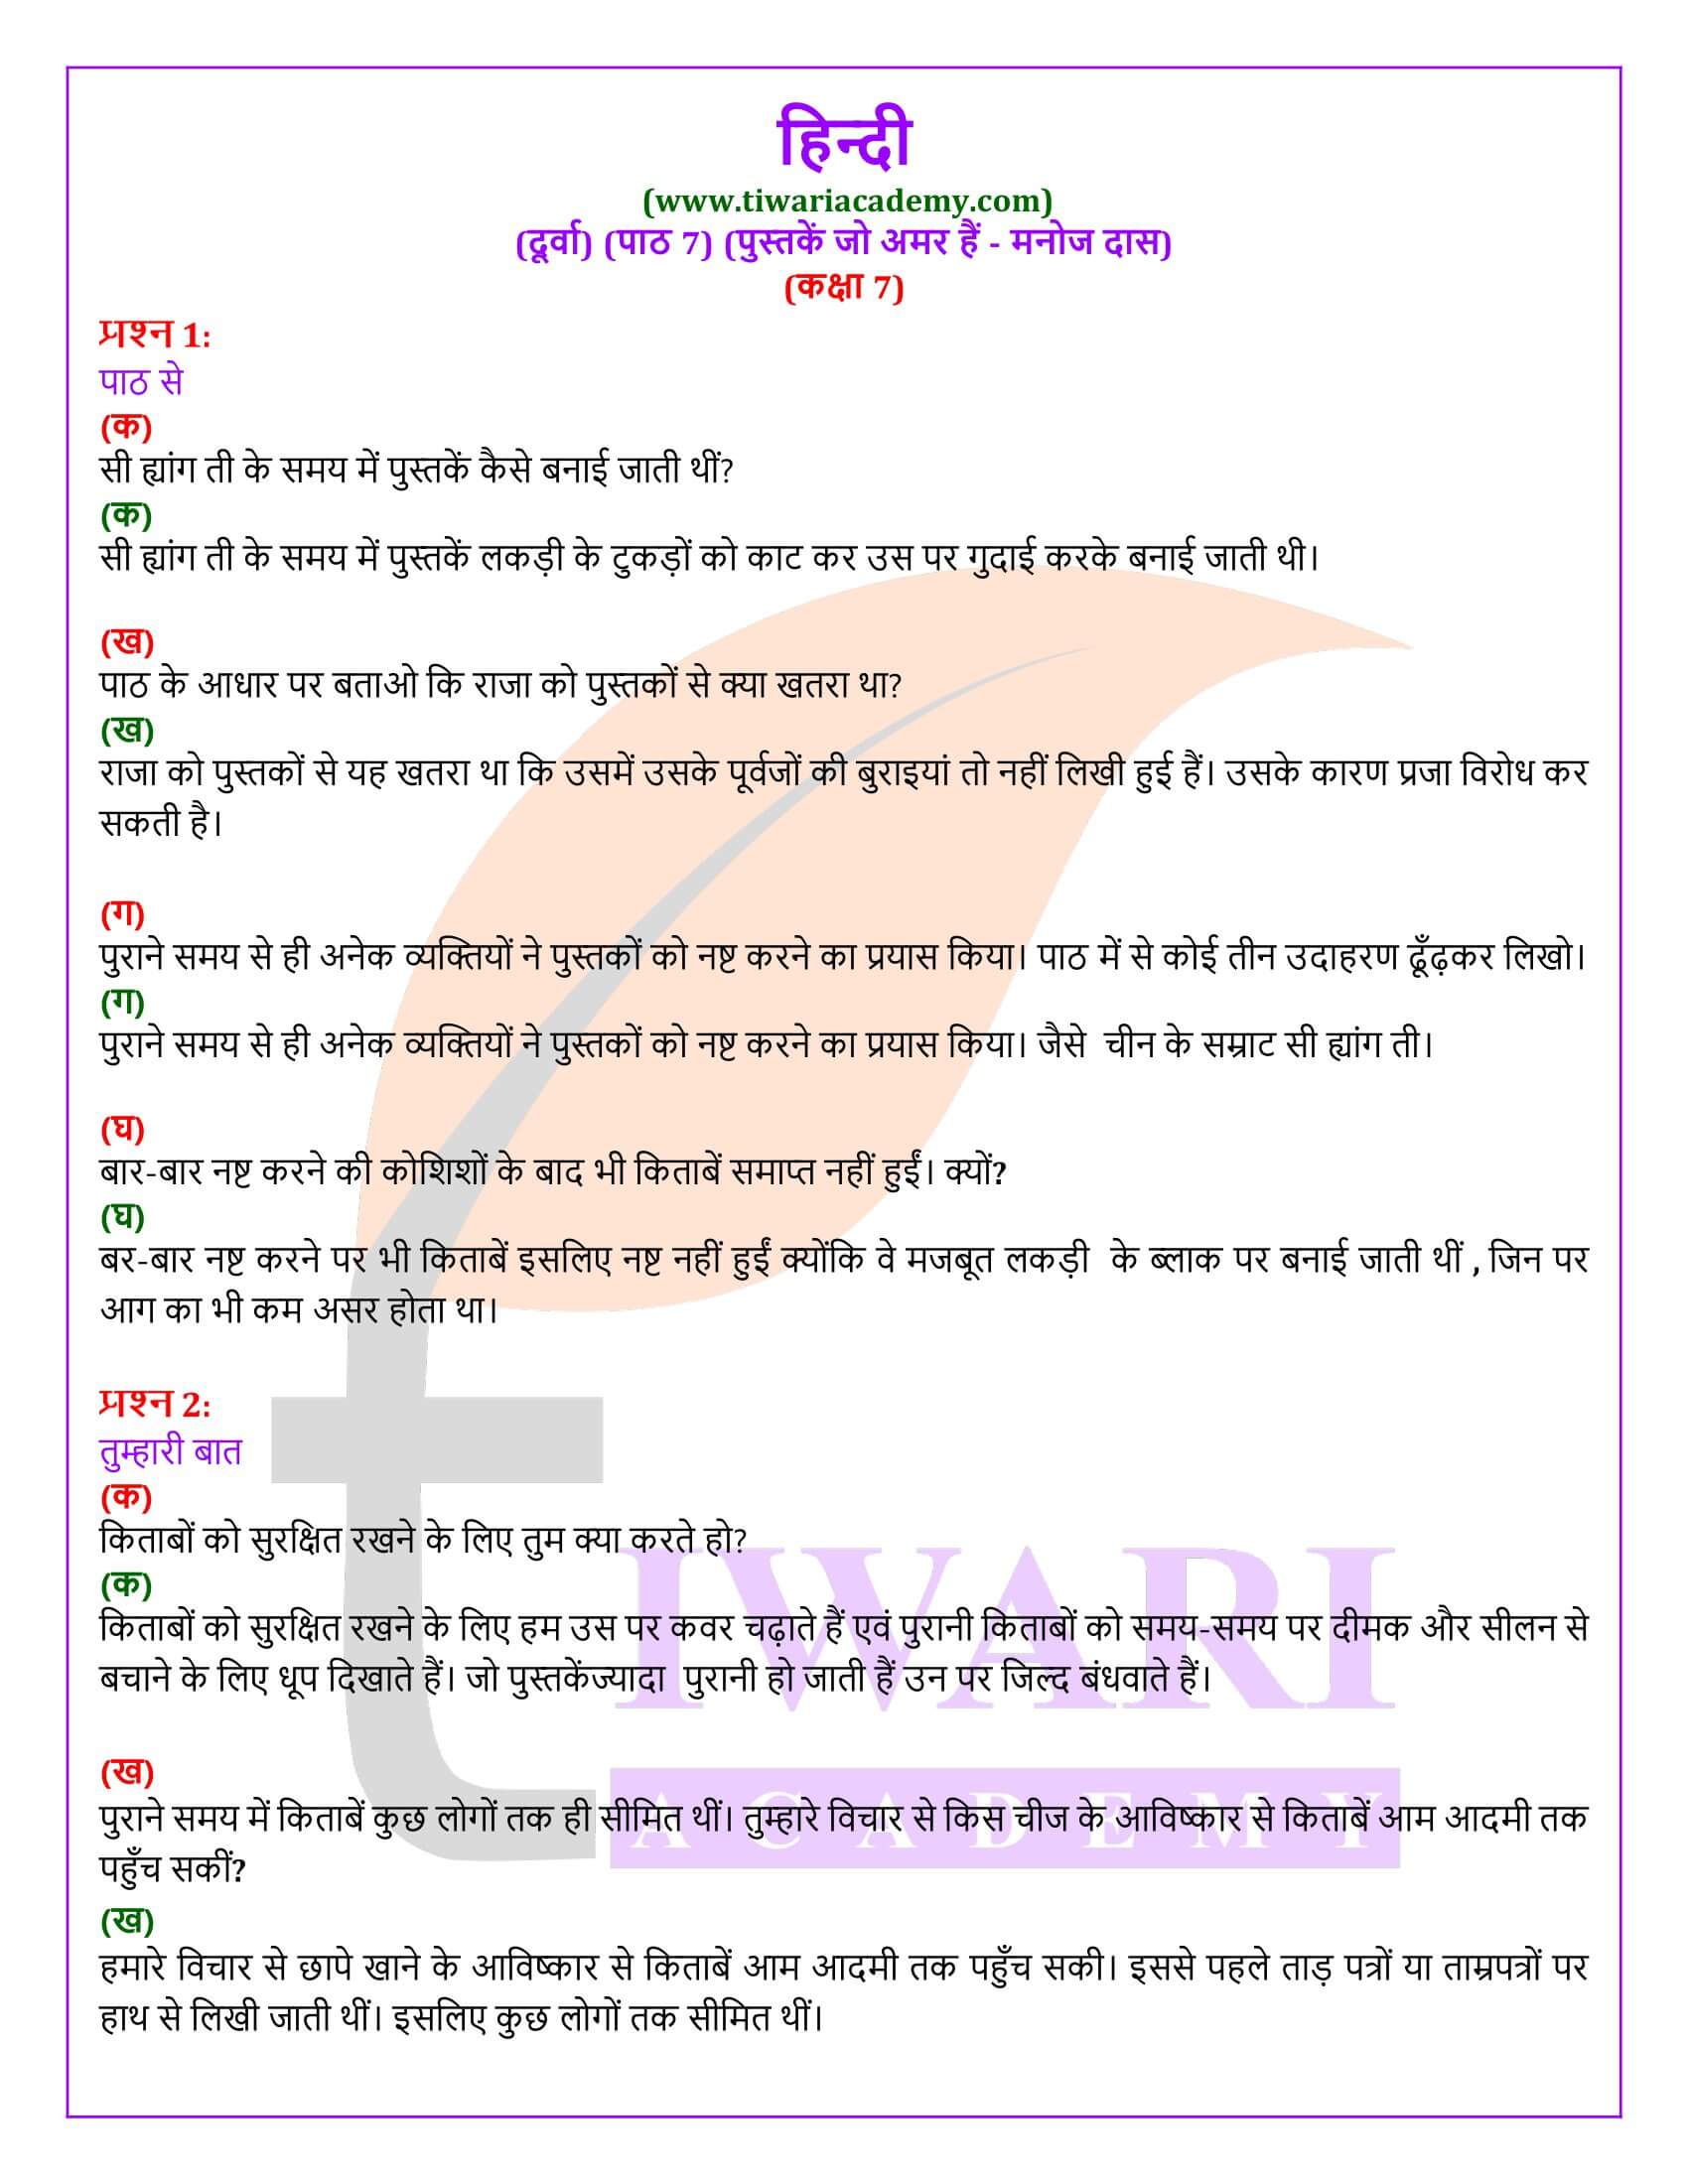 कक्षा 7 हिंदी दूर्वा अध्याय 7 पुस्तकें जो अमर हैं के प्रश्न उत्तर